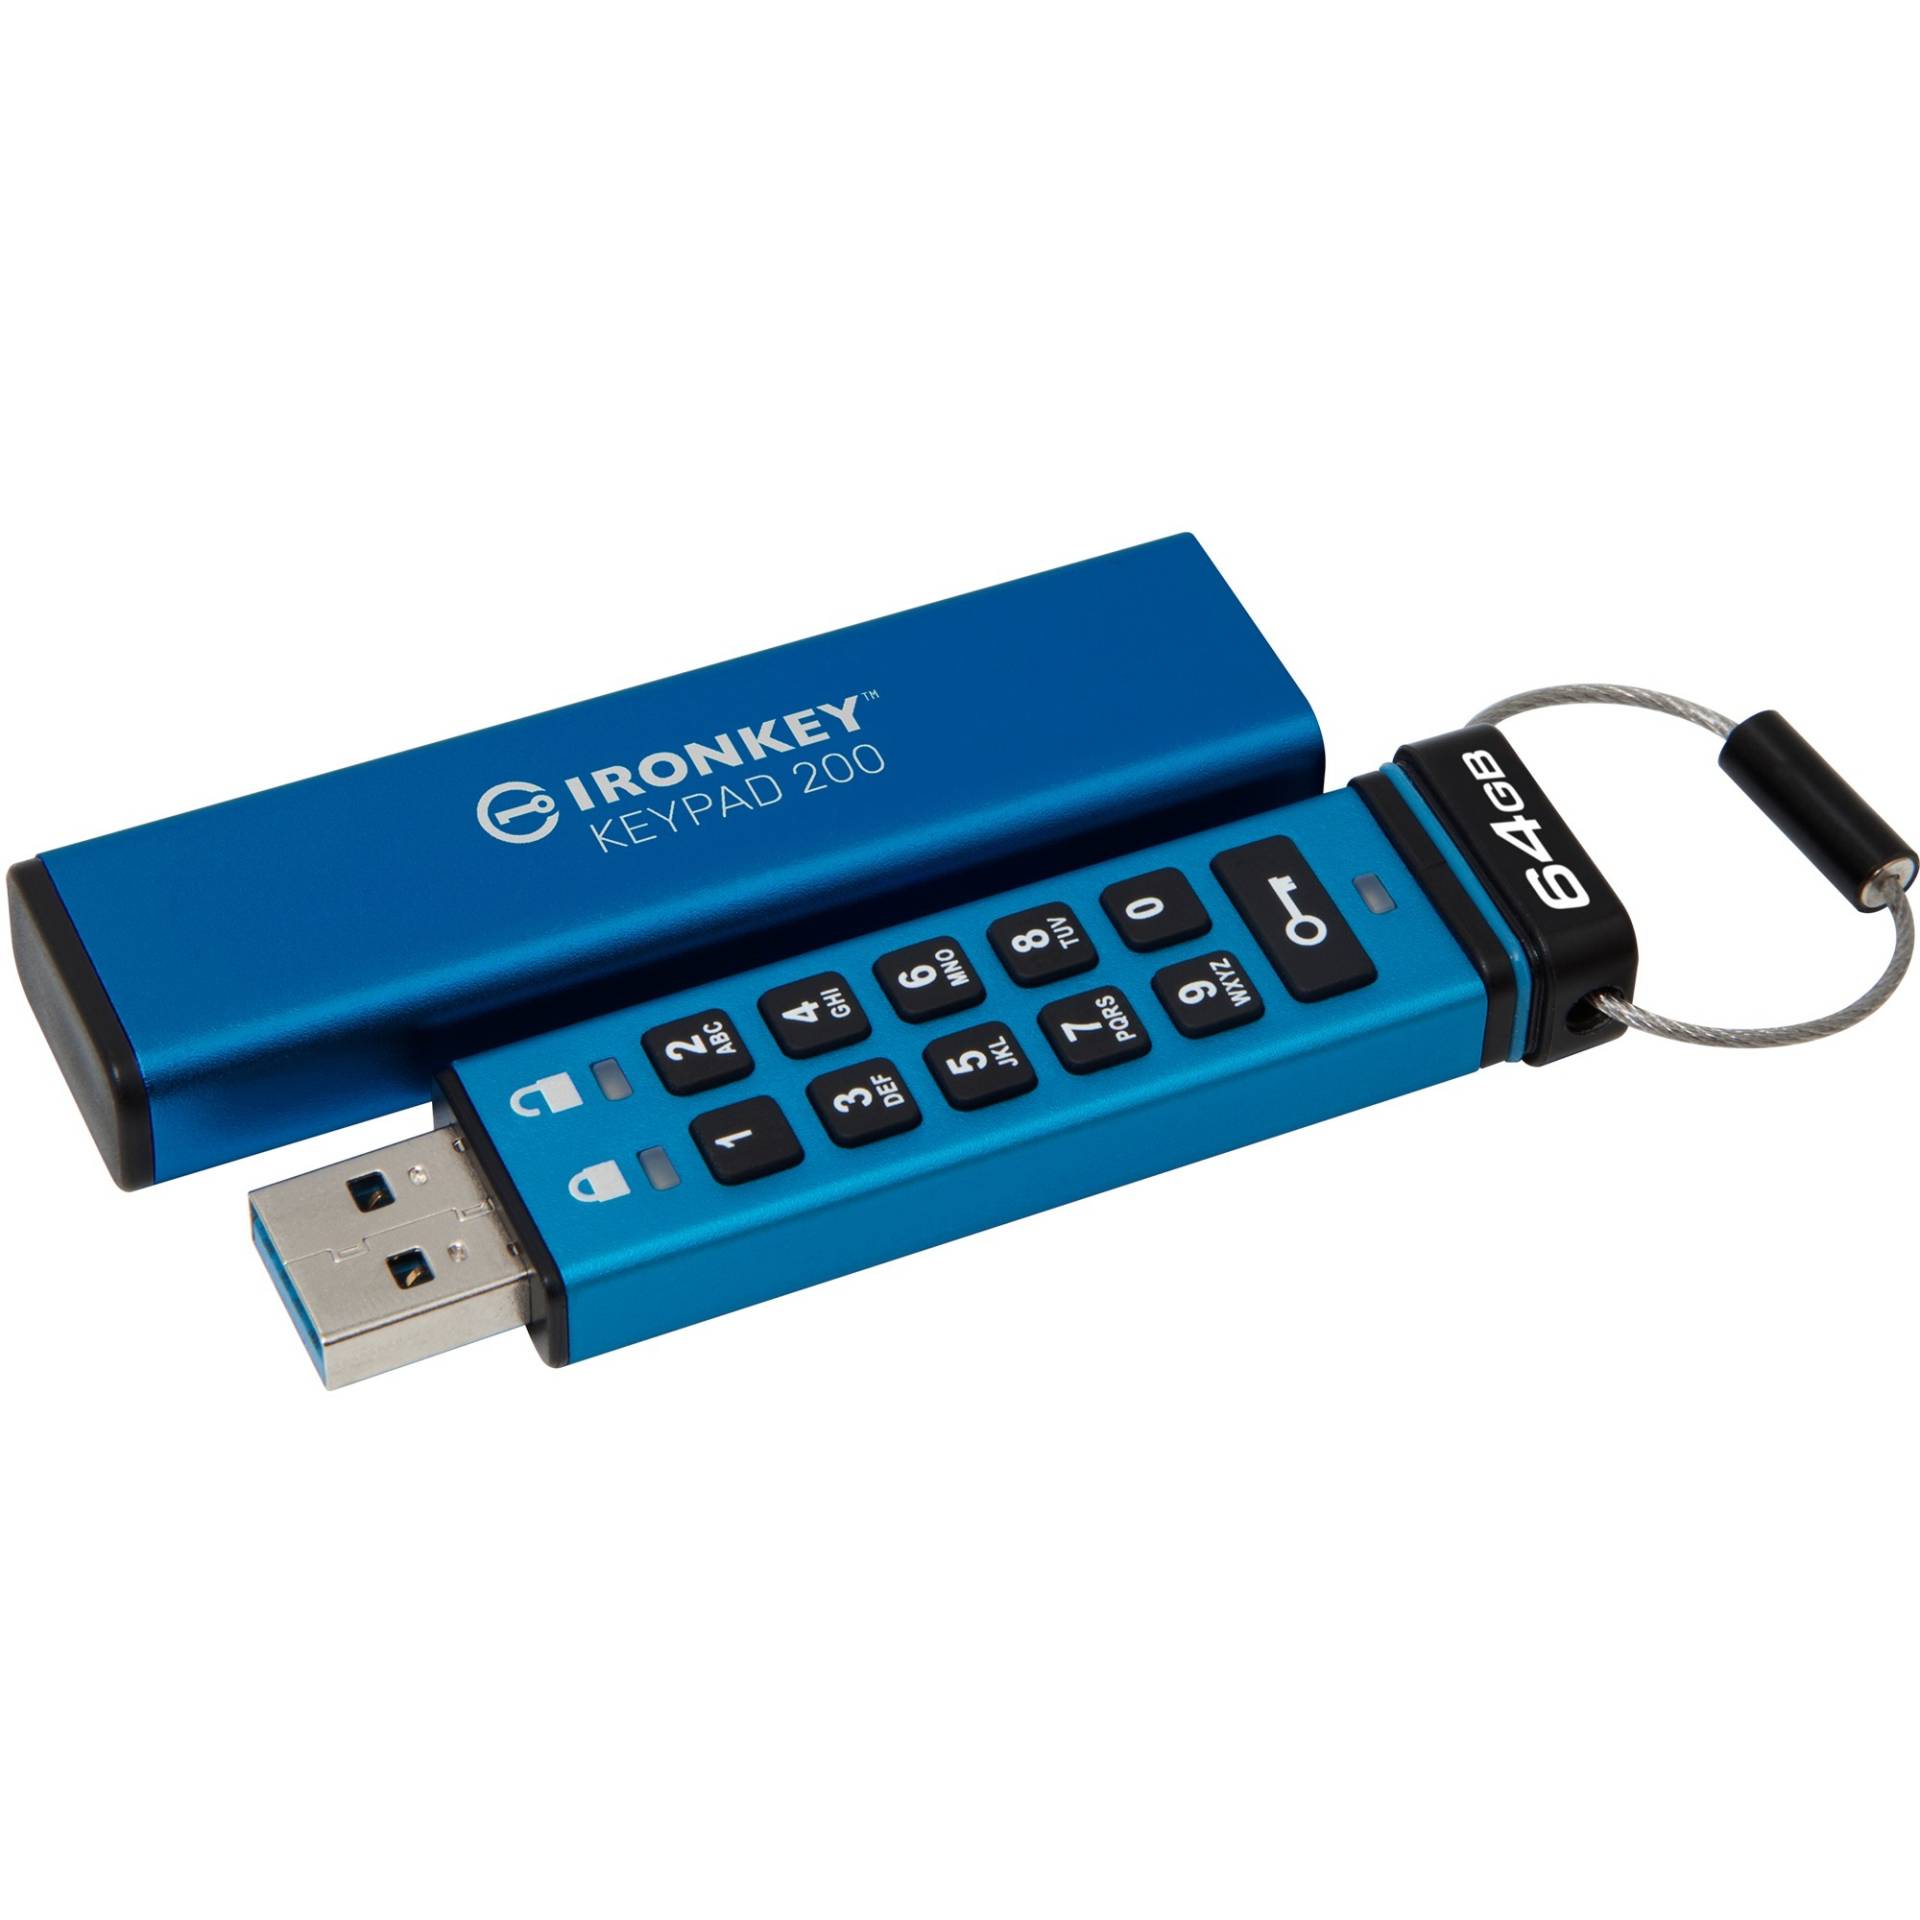 IronKey Keypad 200 64 GB, USB-Stick von Kingston